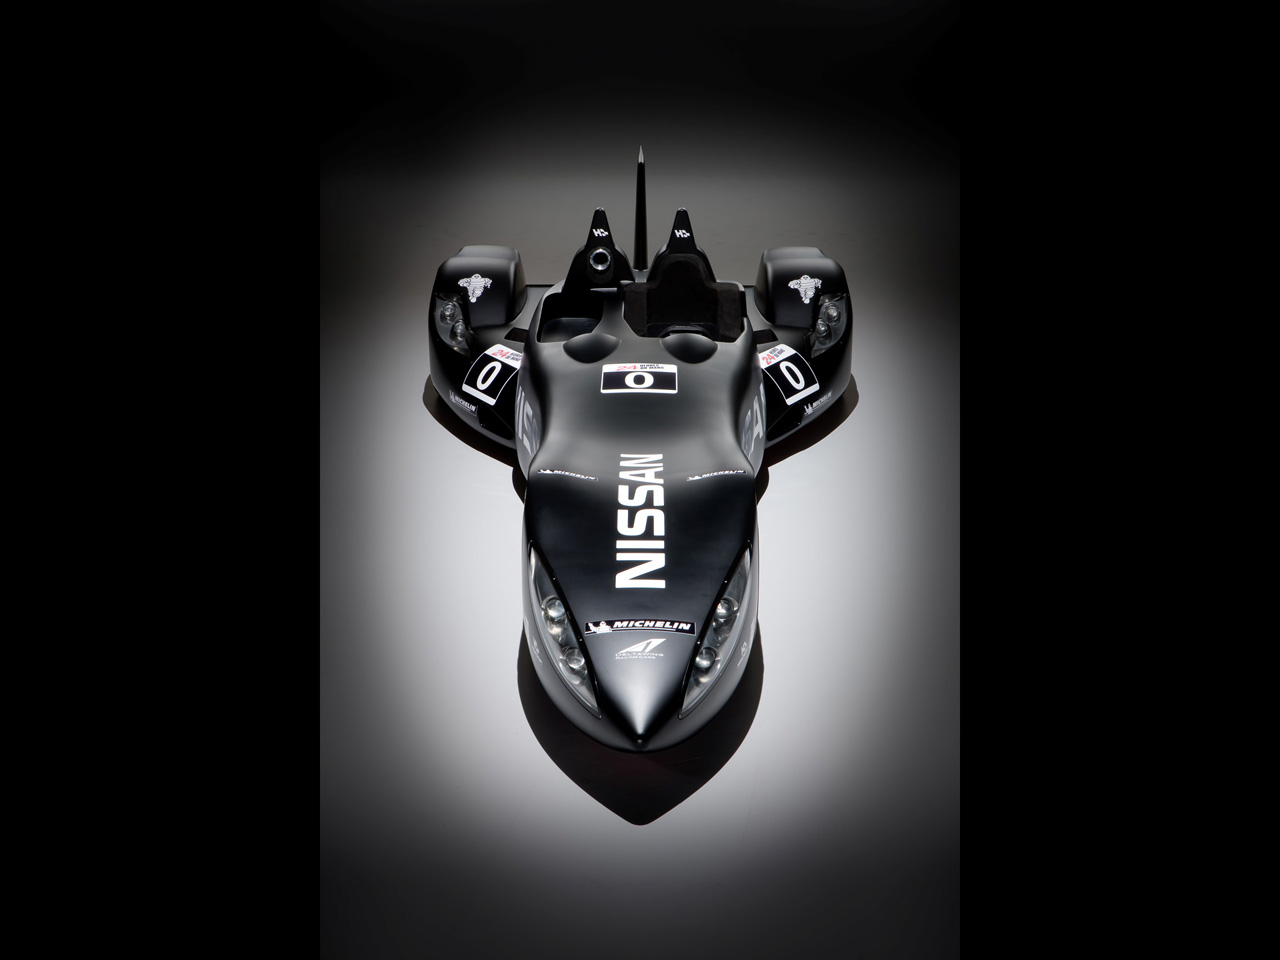 2012 Nissan Deltawing Le Mans Race Car